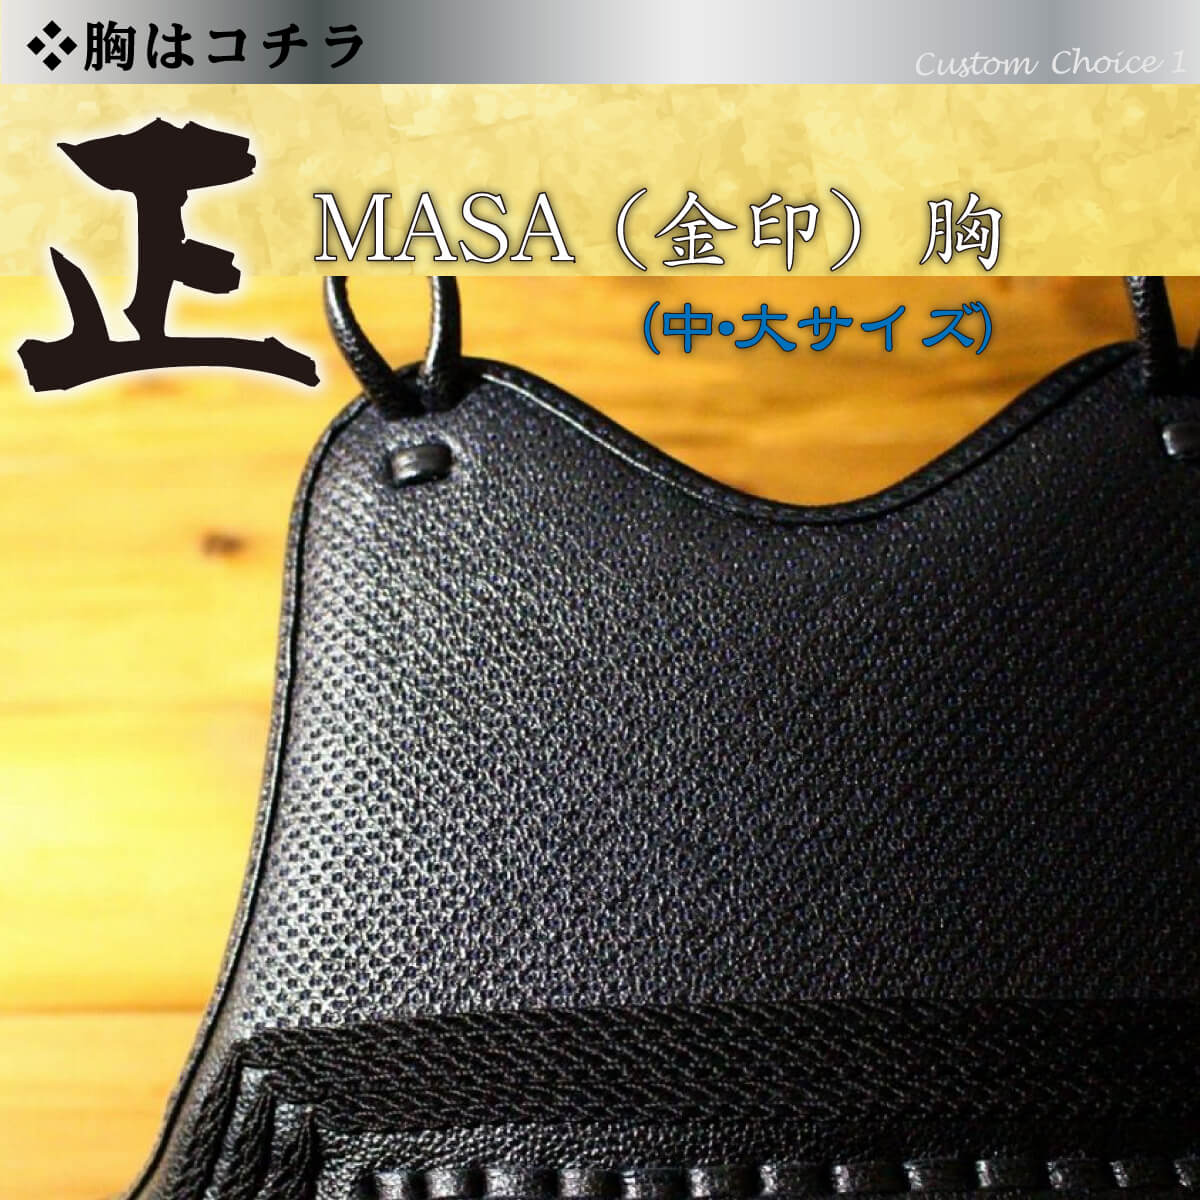 【 正 -MASA- 金 】 剣道 カスタム胴 60本型 大サイズ カラー樹脂胴台 